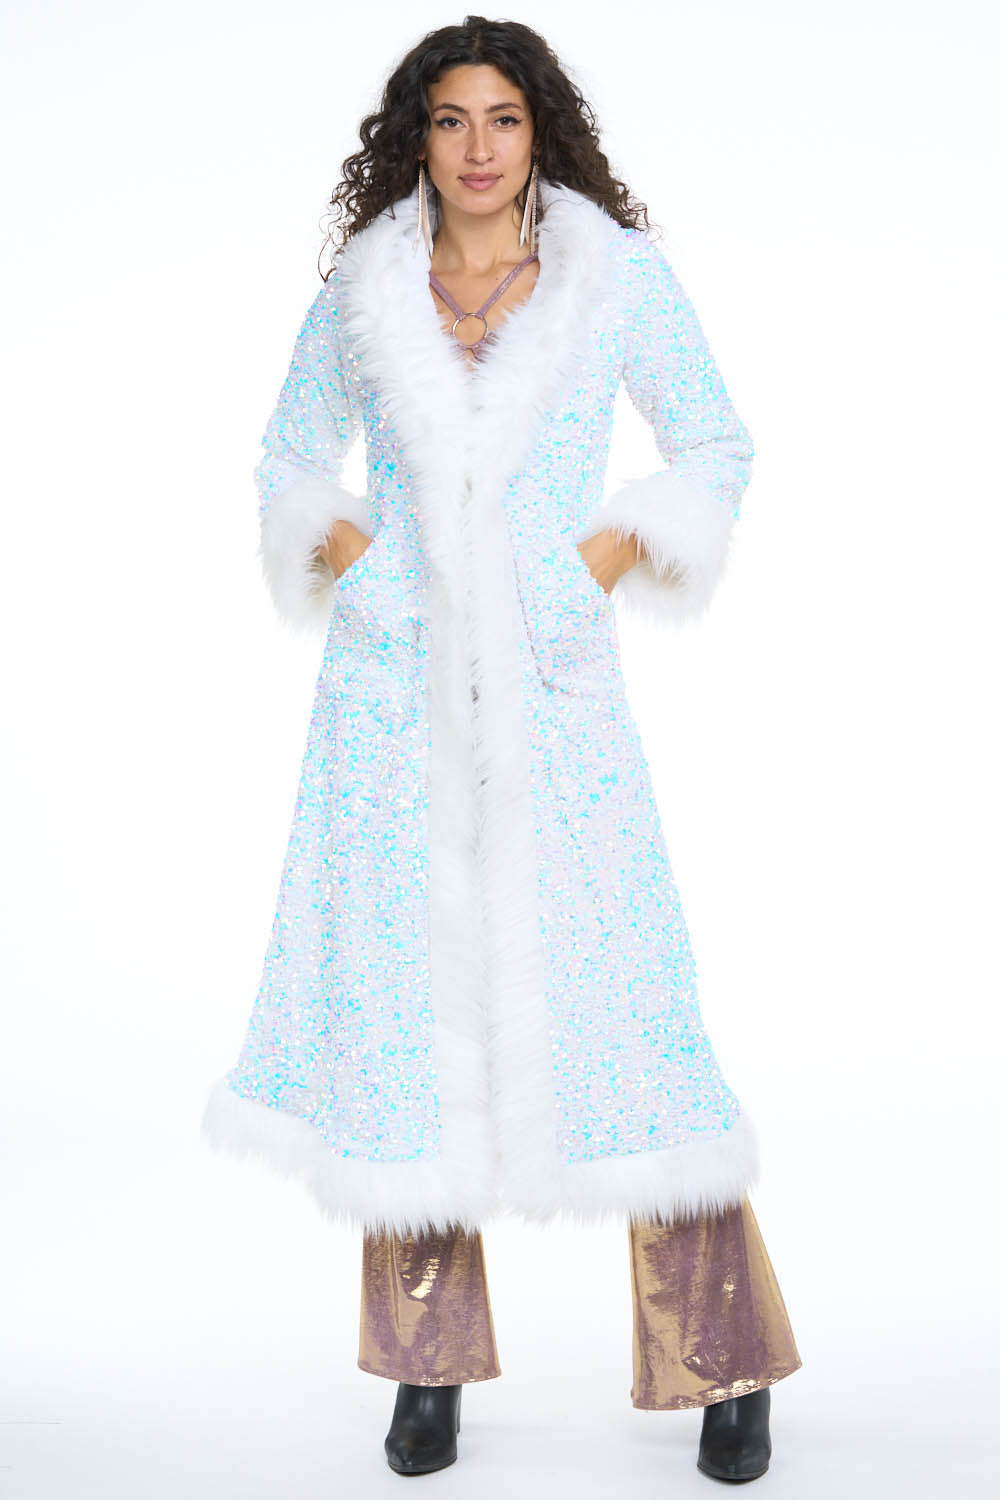 Deluxe Tamo Coat: Unicorn Starlight Sequin + White Faux Fur Trim